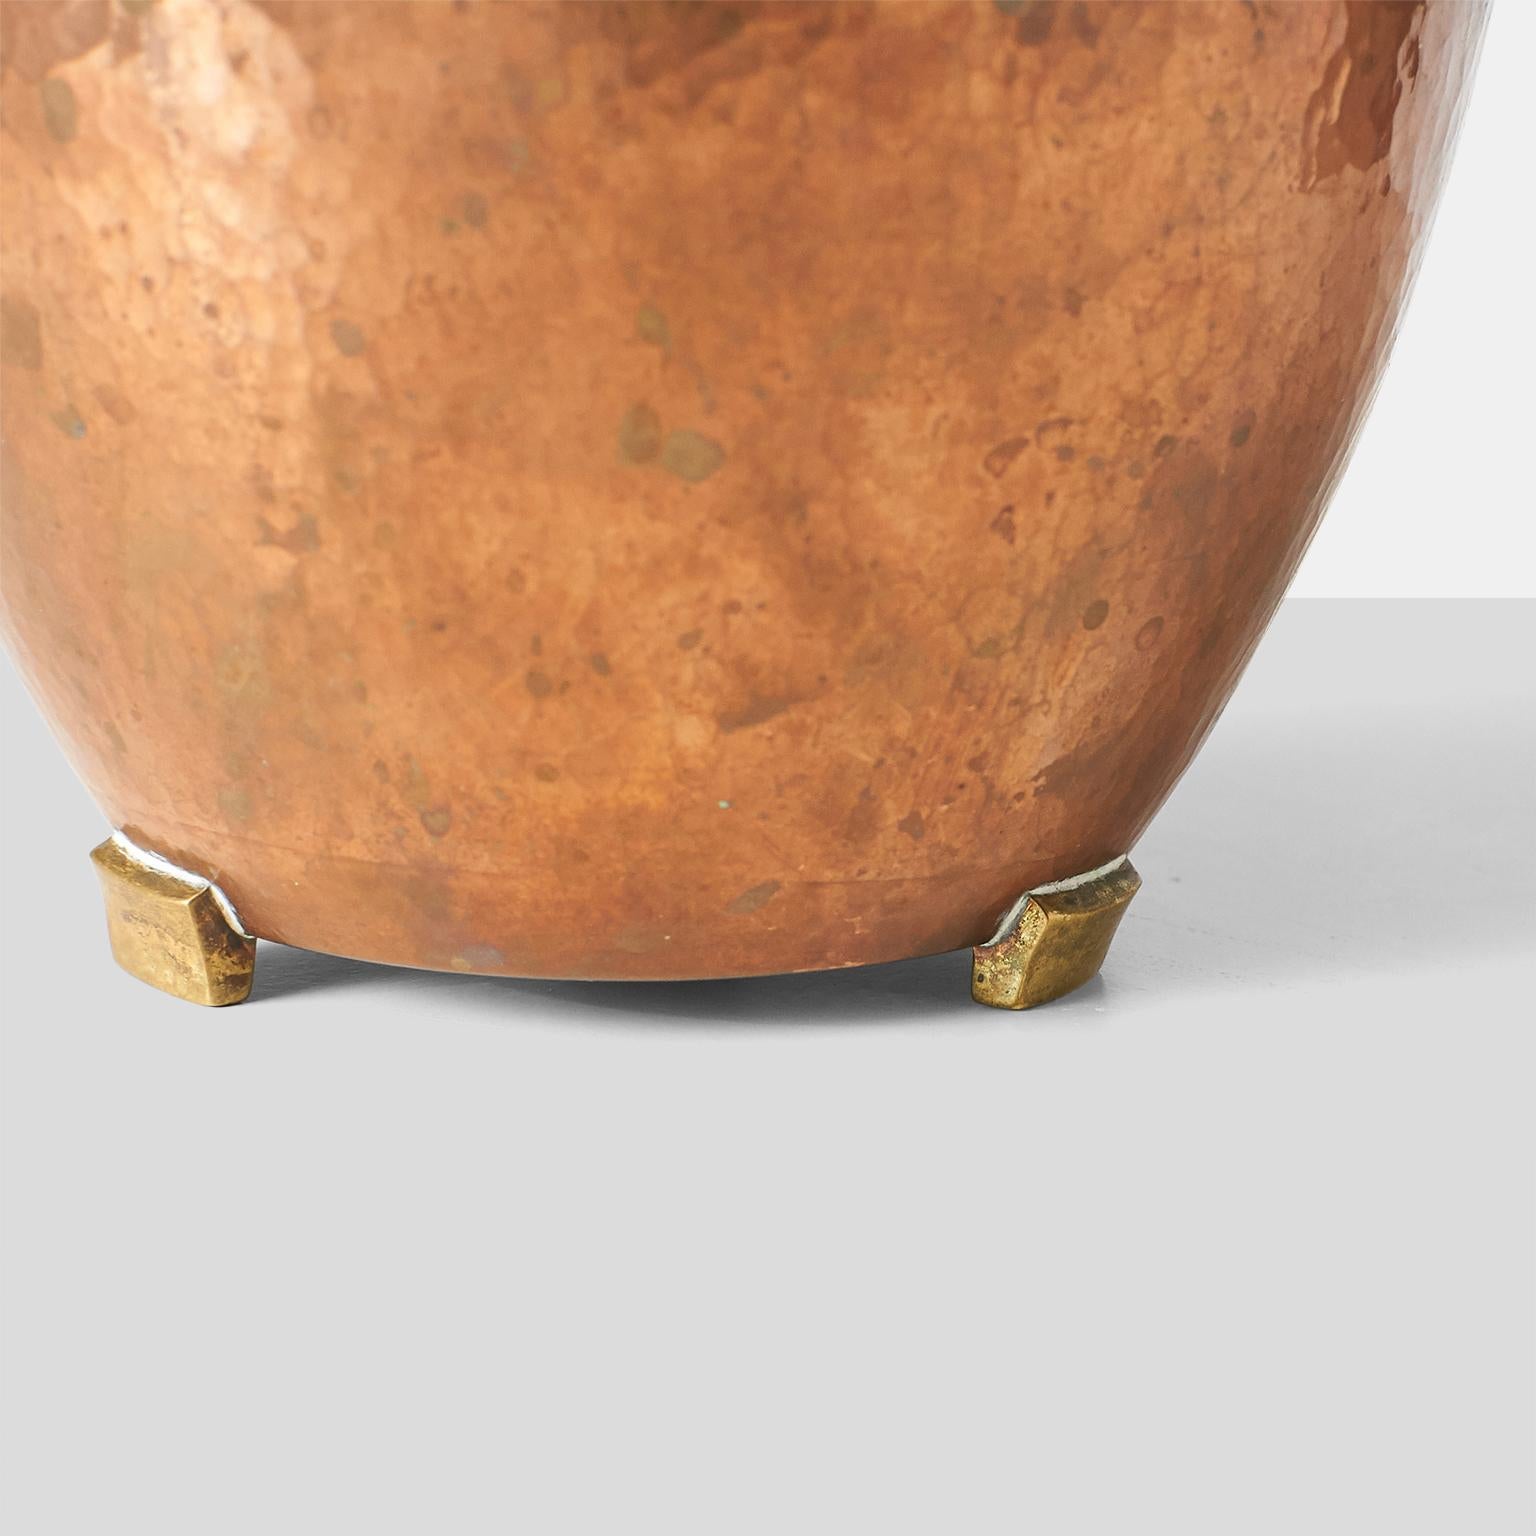 Modern Hammered Copper Pot by Karl Hagenauer